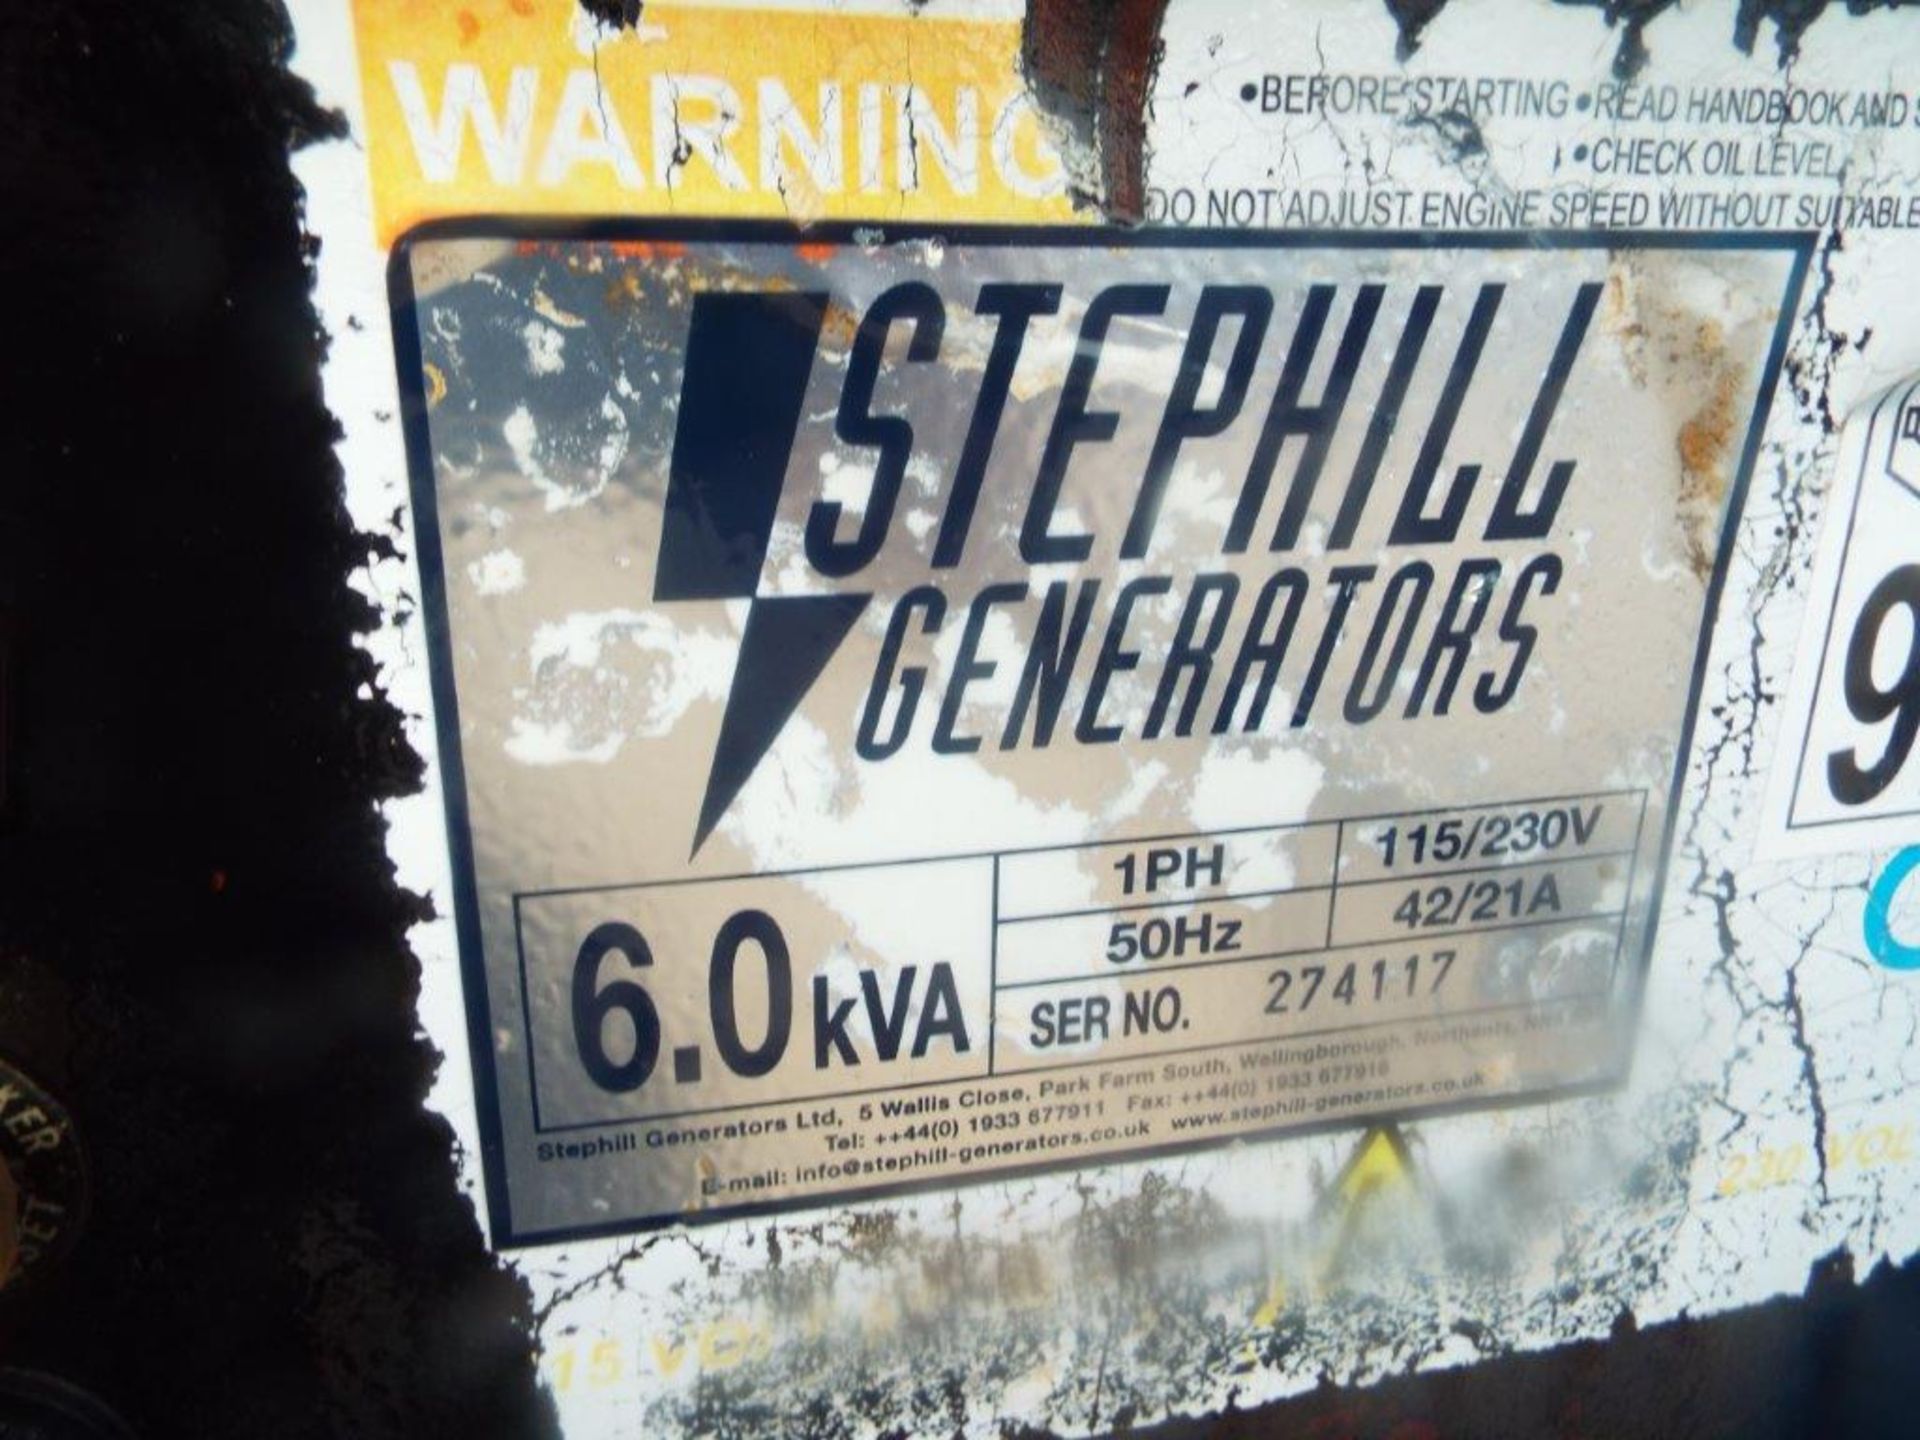 Stephill Generators 6.0 kVA 110/230V Diesel Generator - Image 13 of 14